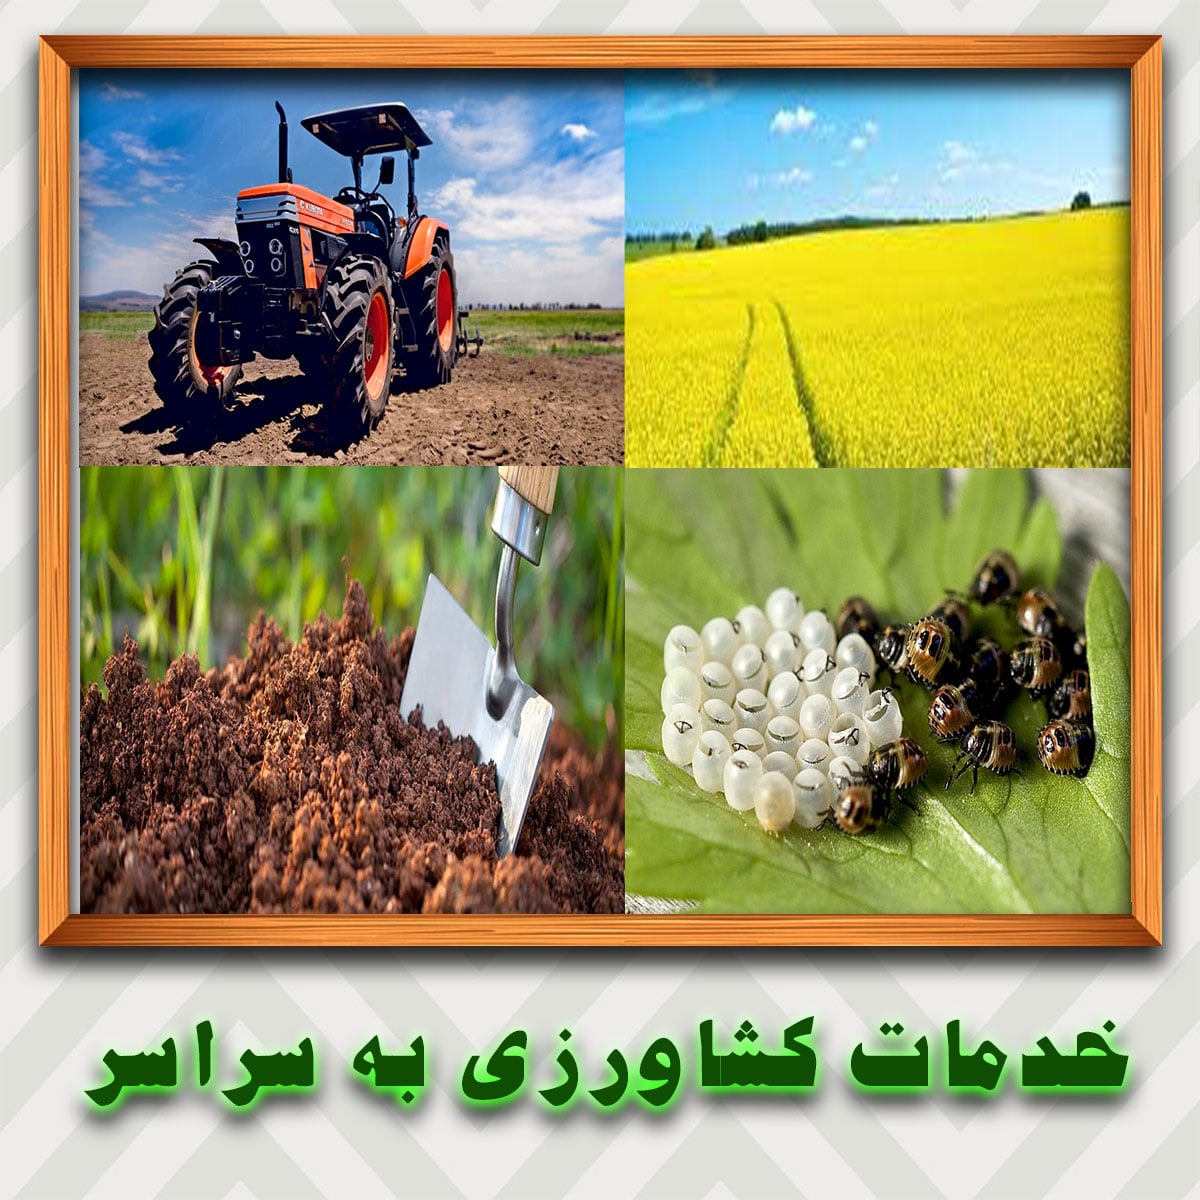 عرضه-خدمات-کشاورزی-به-سراسر-نقاط-ایران-به-صورت-اینترنتی